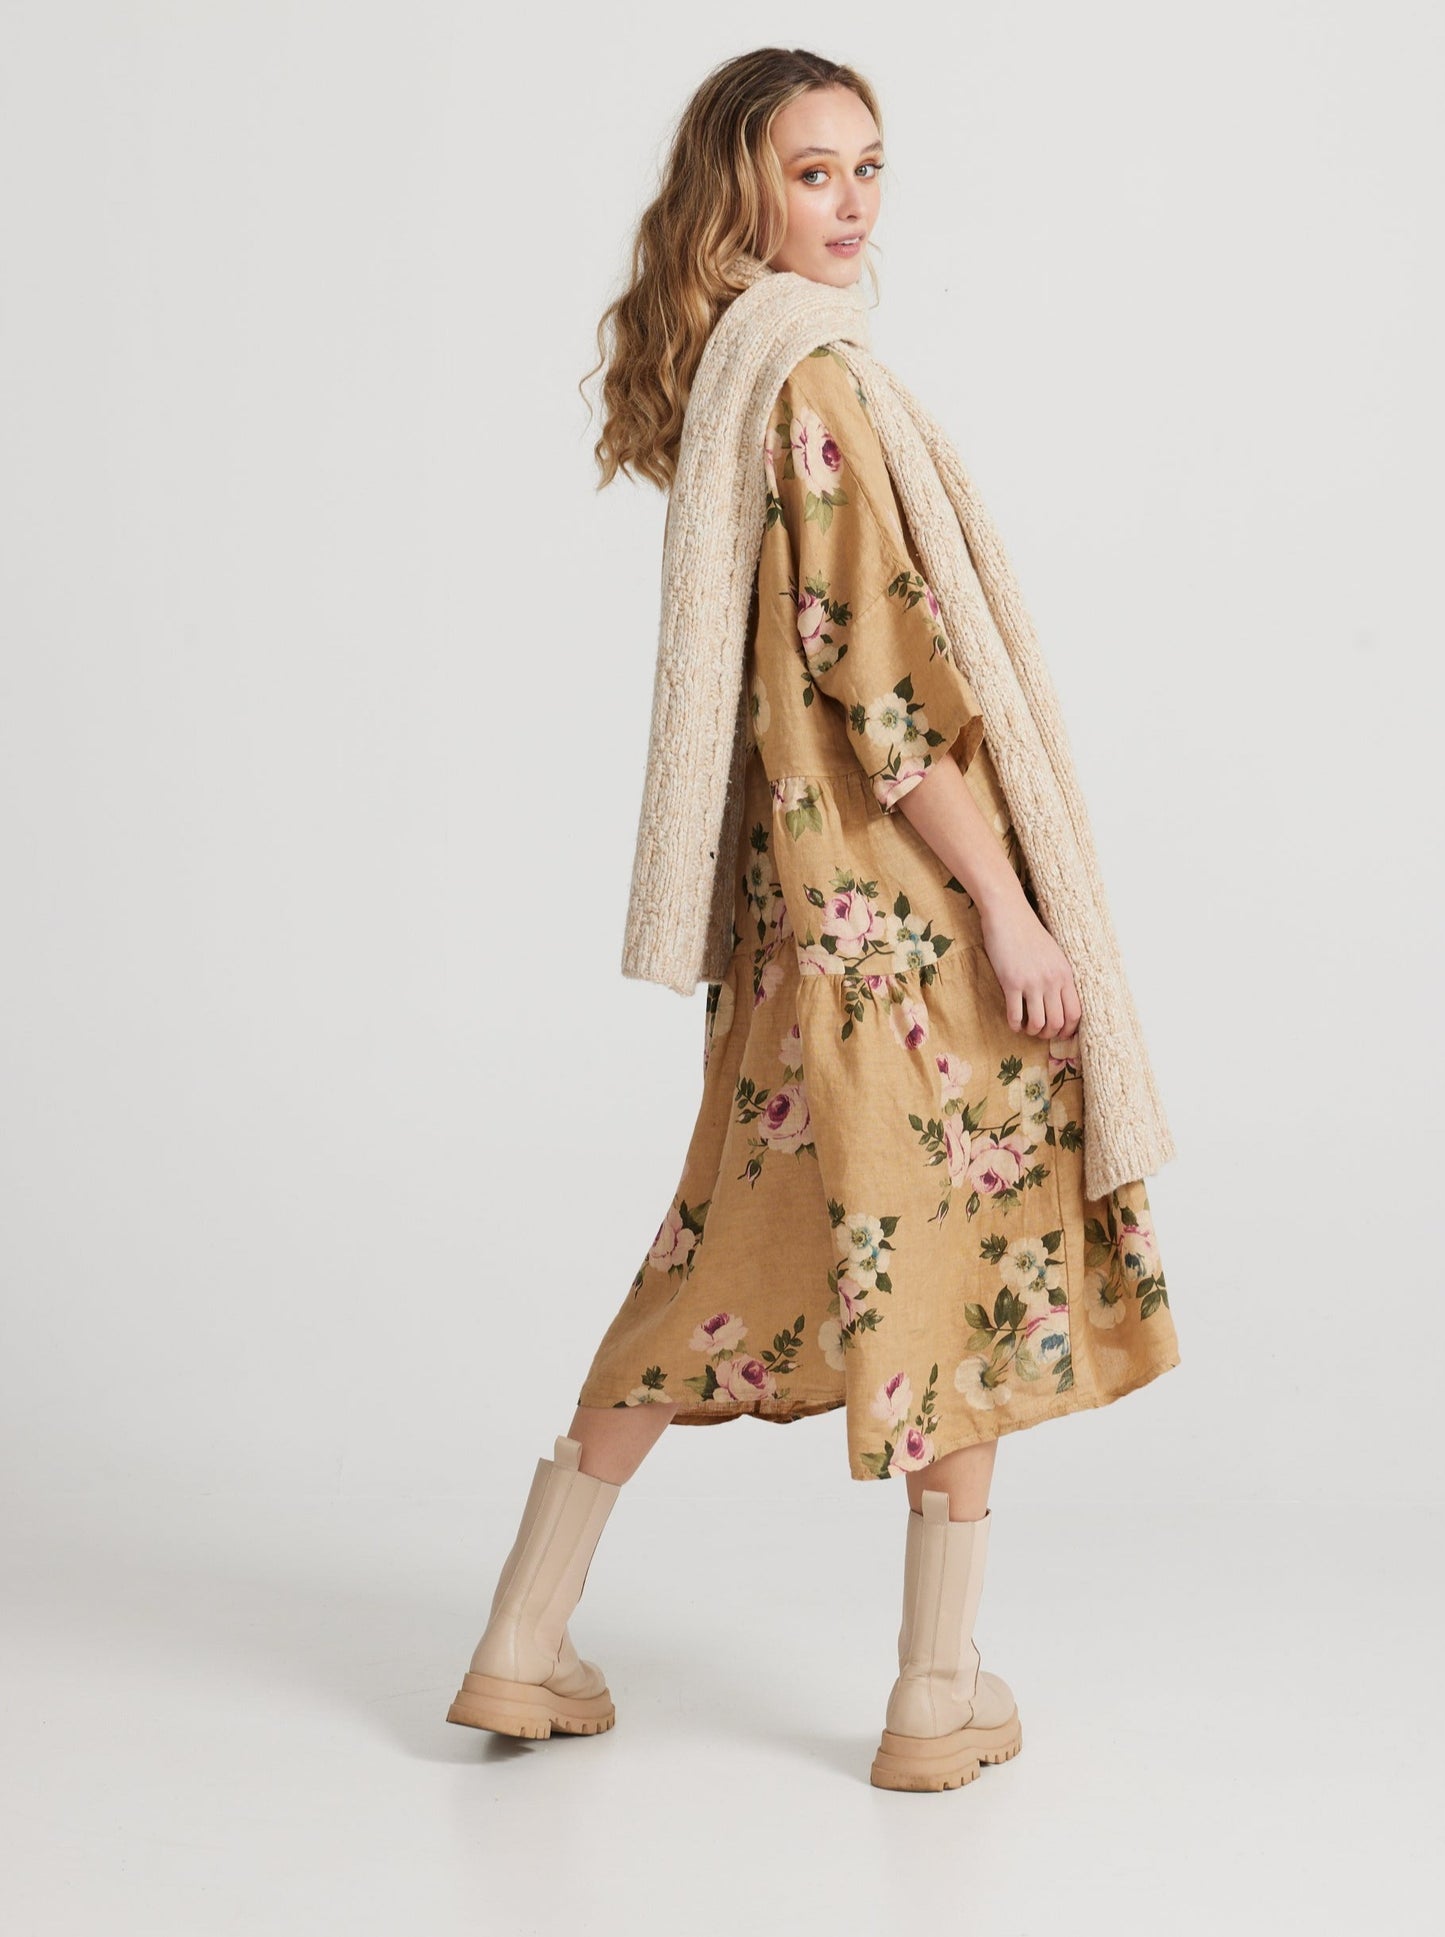 Stella linen floral dress. Caramel